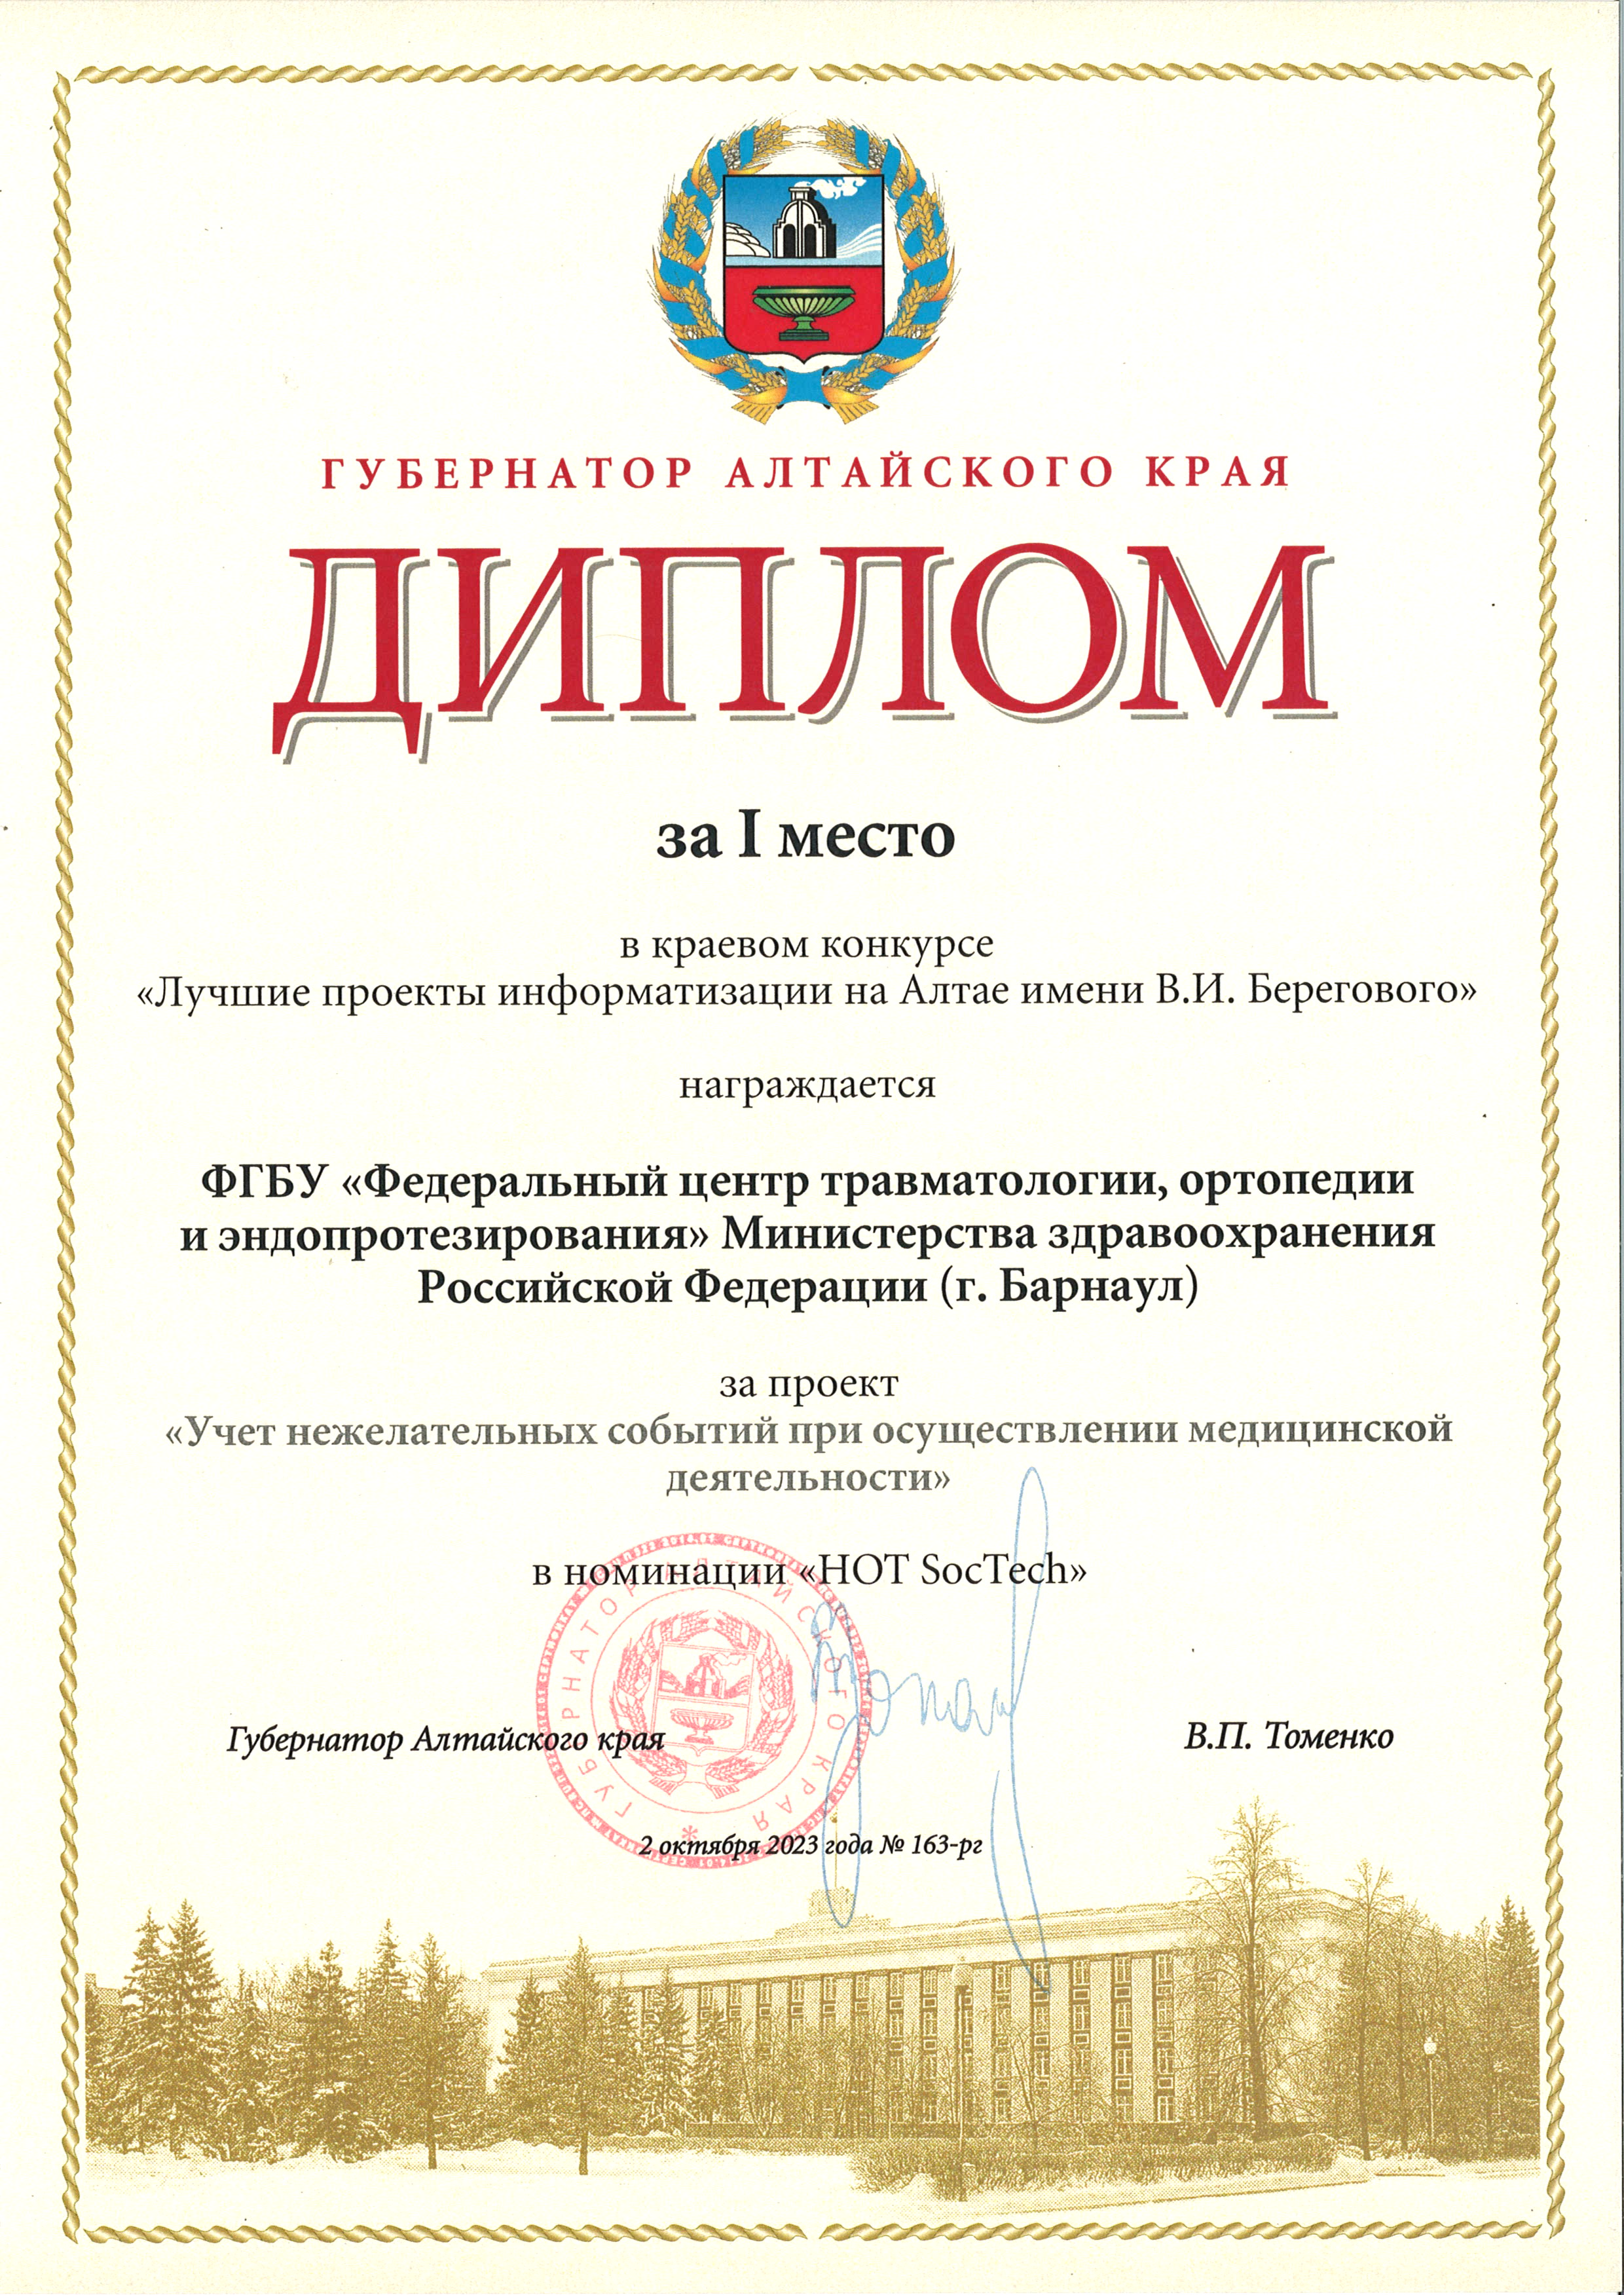 Диплом краевого конкурса _Лучшие проекты информатизации на Алтае_2023.jpg